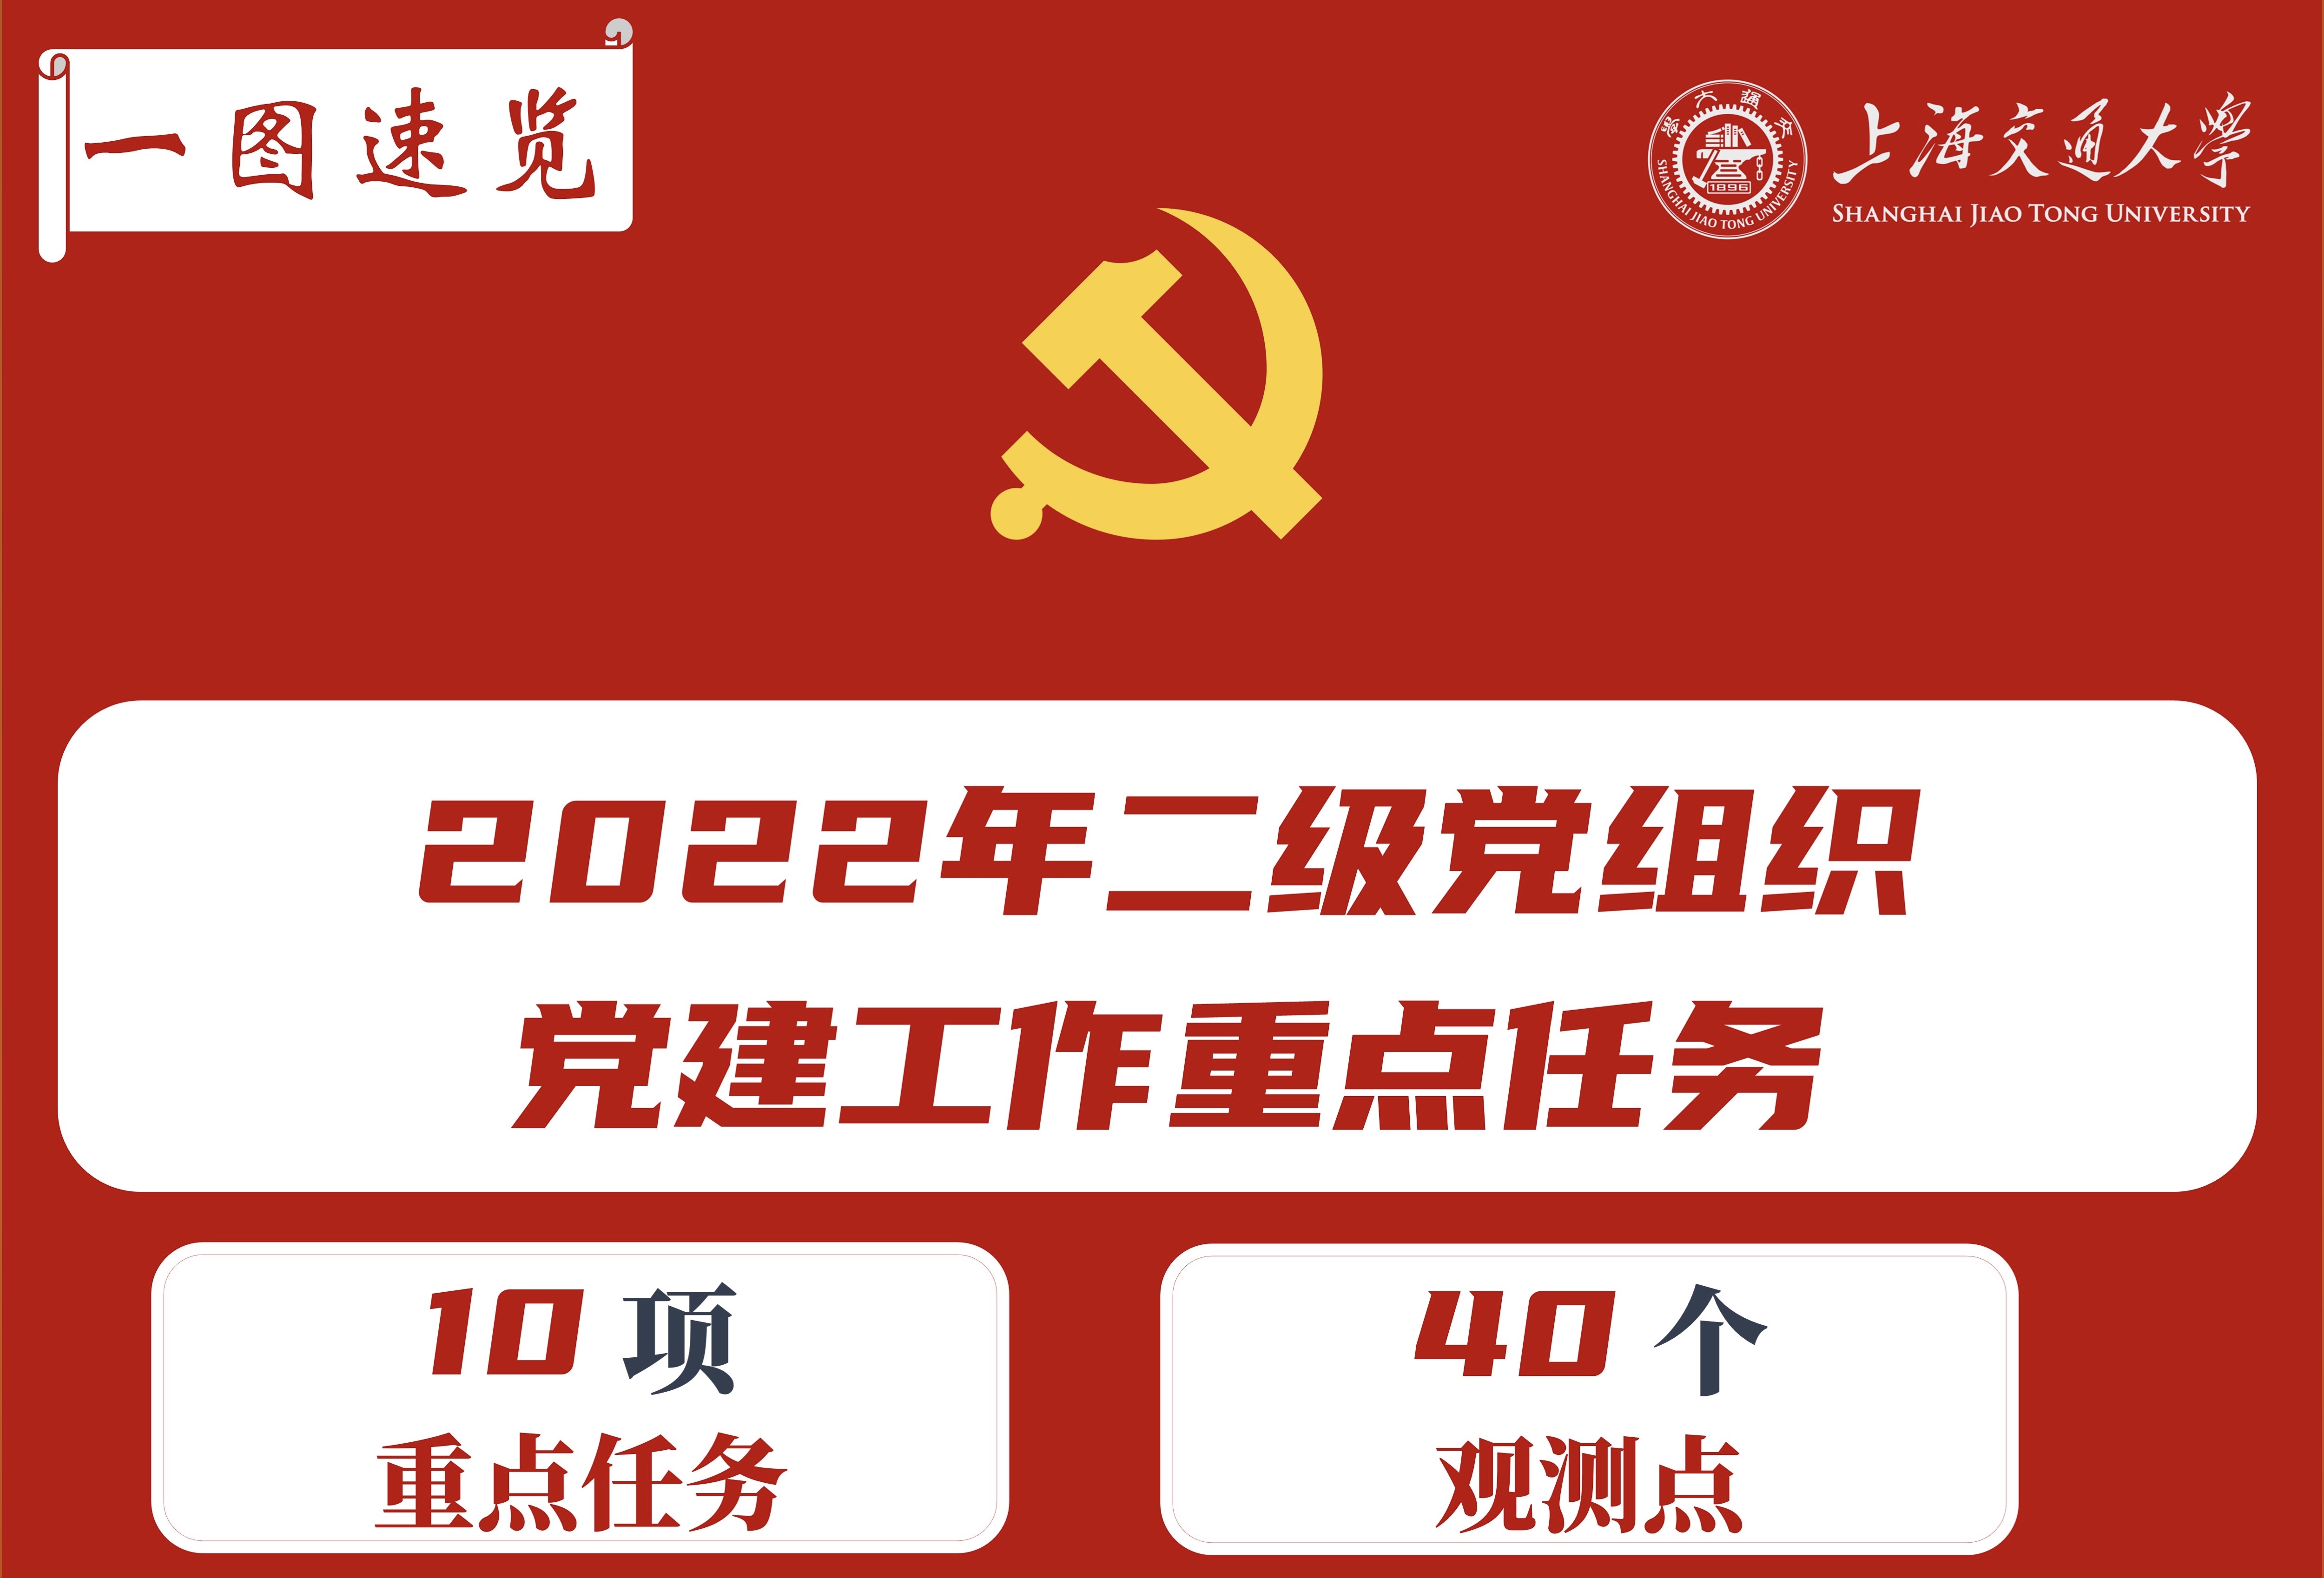 【一图速览】2022年二级党组织党建工作重点任务